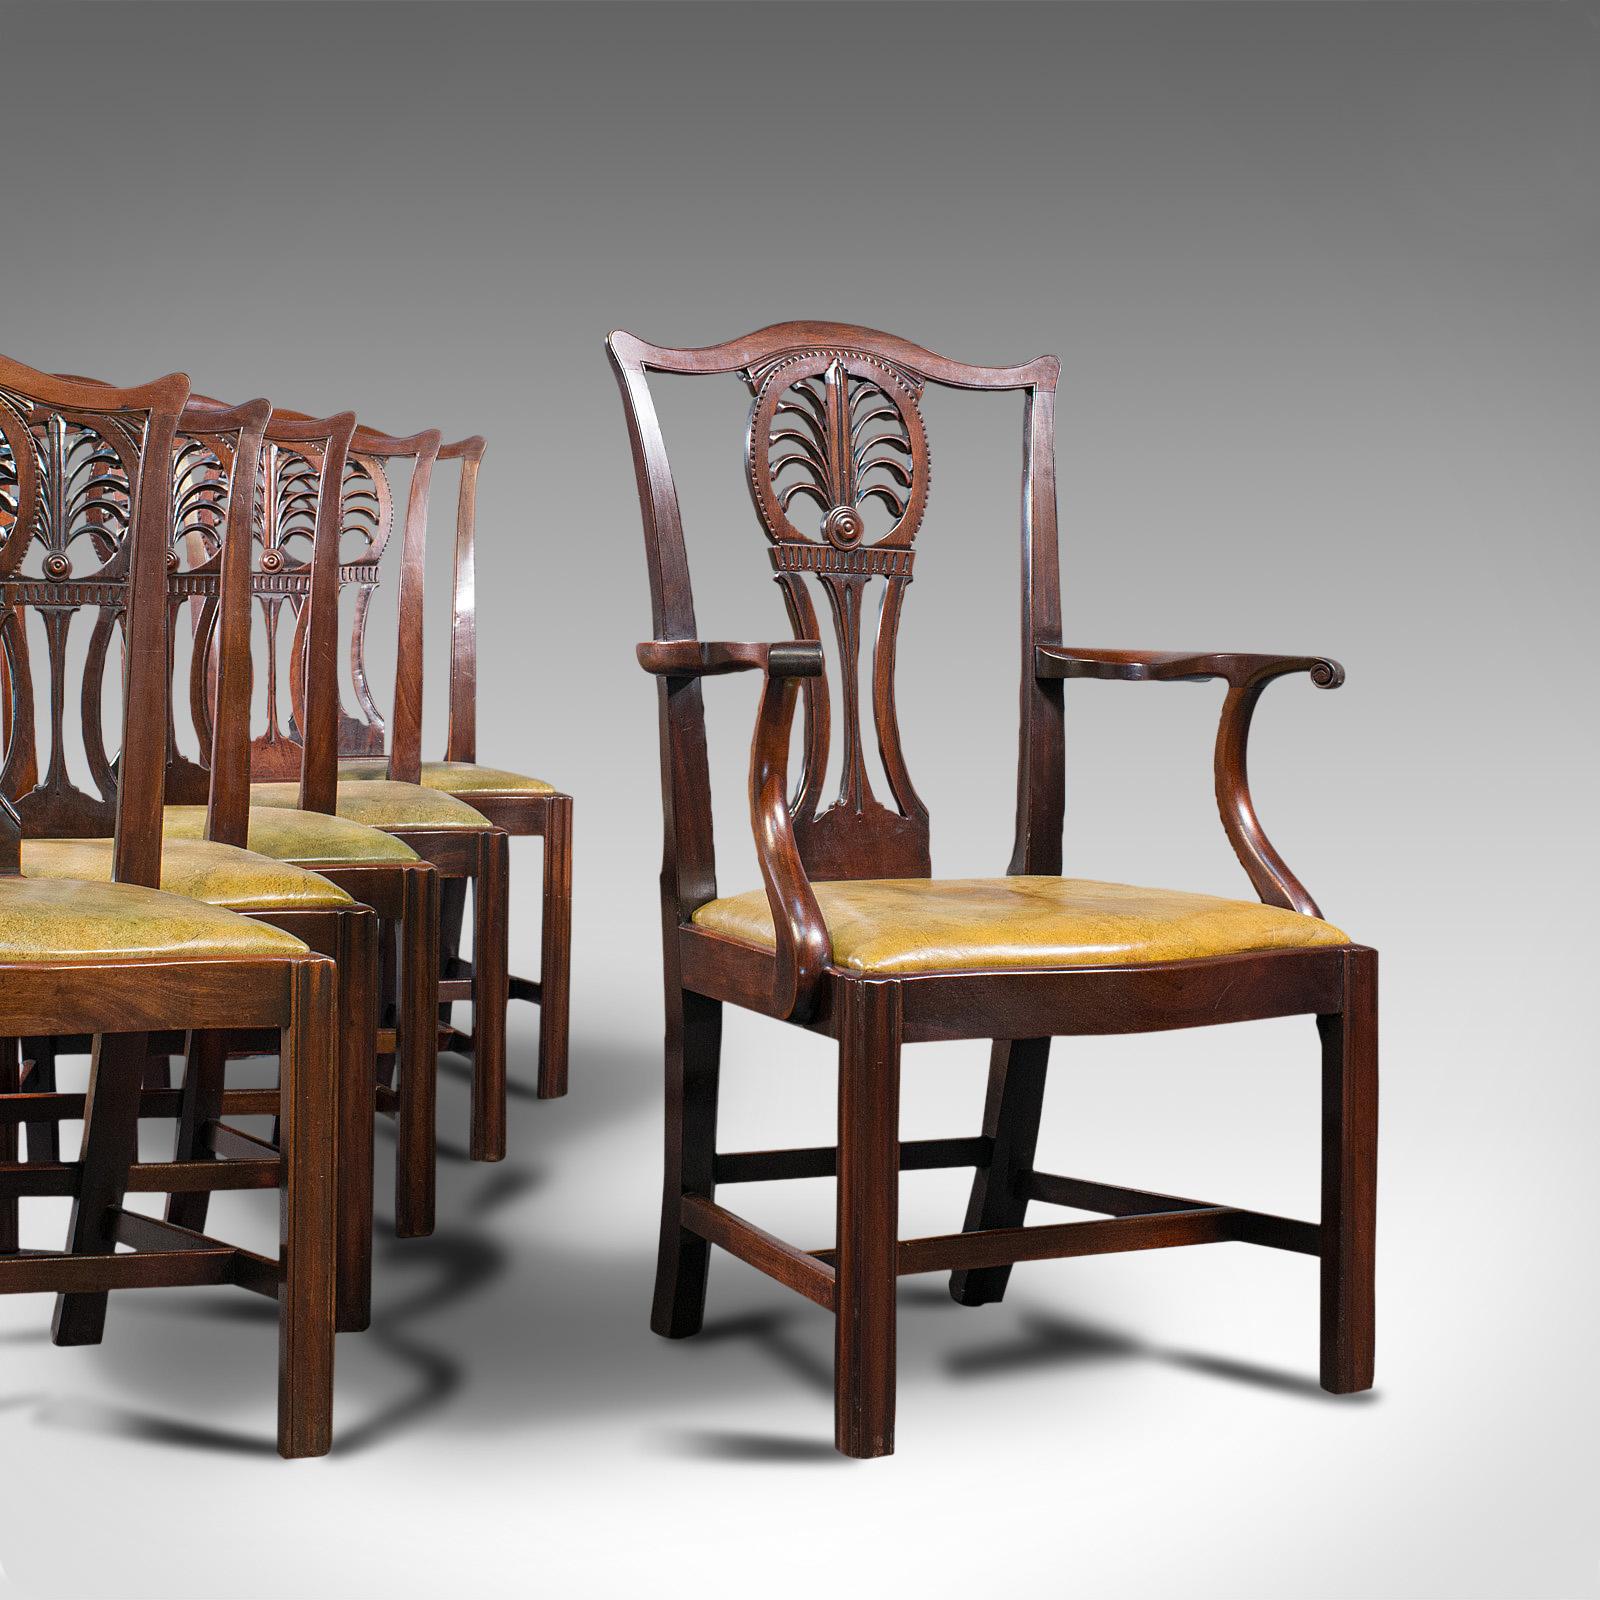 Dies ist ein antiker Satz von 6 Esszimmerstühlen. Ein englischer Königsstuhl aus Mahagoni und Leder und eine Sitzgarnitur mit 5 Stühlen aus der frühviktorianischen Zeit, um 1850.

Eine Esszimmergarnitur von feinem antiken Rang
Mit wünschenswerter